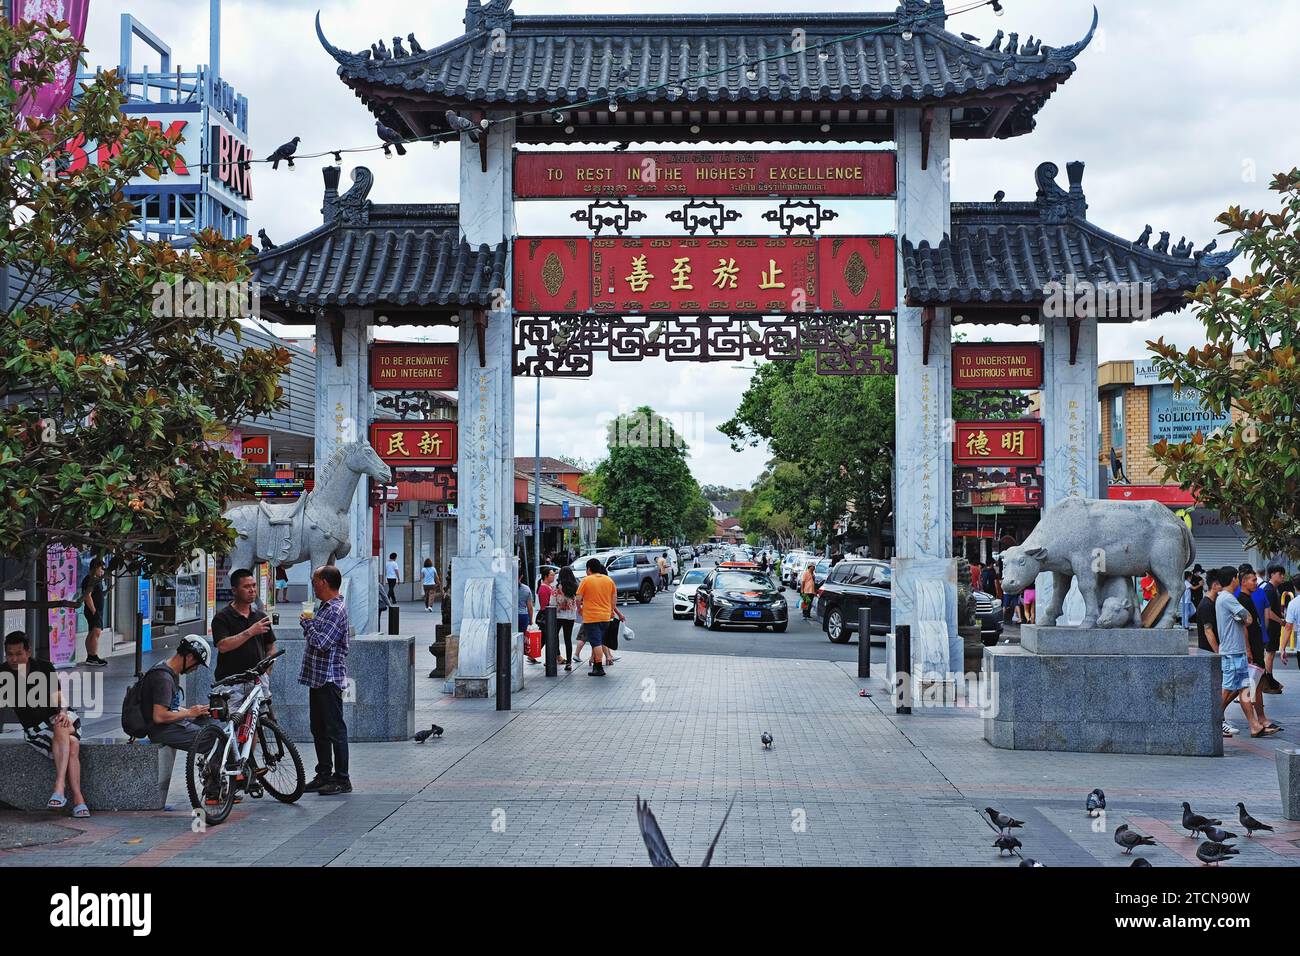 Vue sur Freedom Plaza, Cabramatta, à travers le Pai Lau, les portes cérémonielles chinoises avec des statures en pierre sculptée d'un cheval et bœuf sellé Banque D'Images